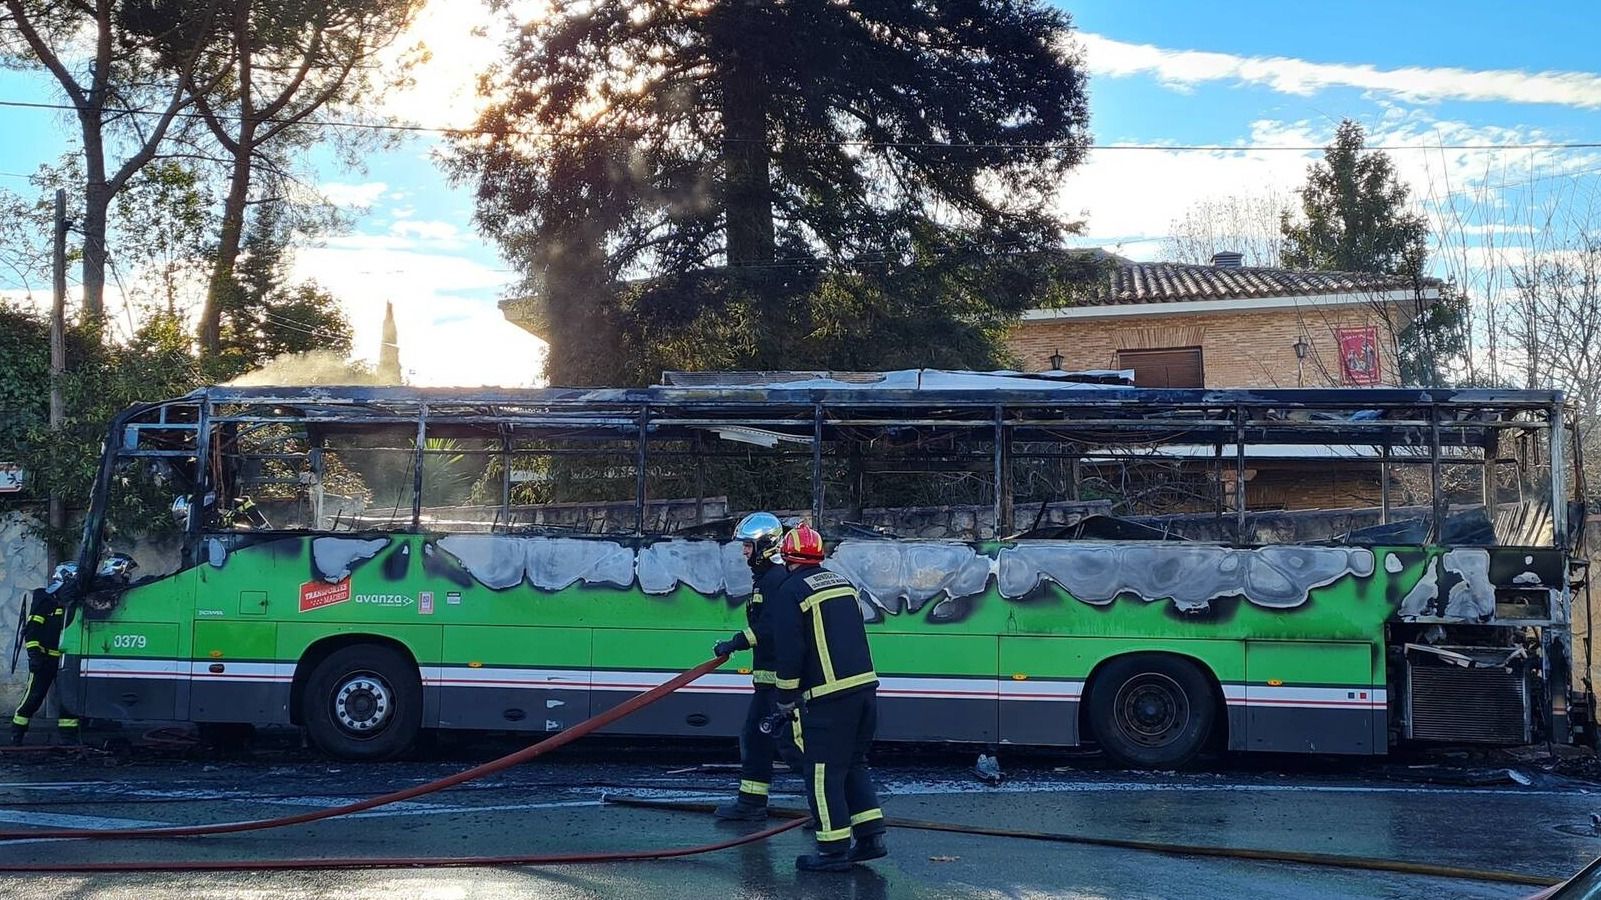 Arde un autobús de la empresa Llorente en el centro de Pozuelo